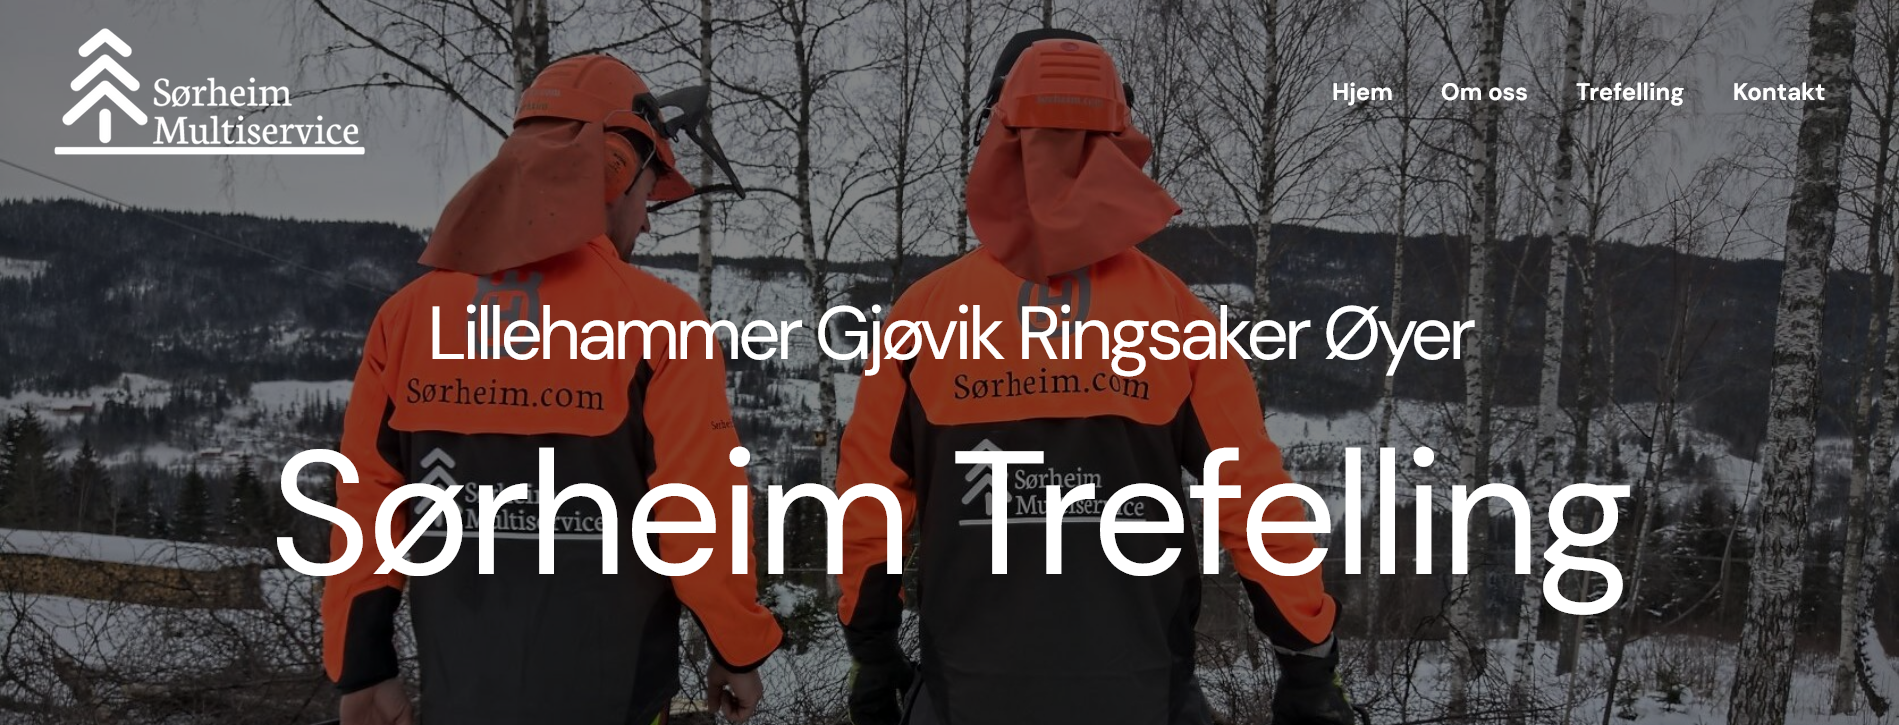 Trefelling Lillehammer Ringsaker